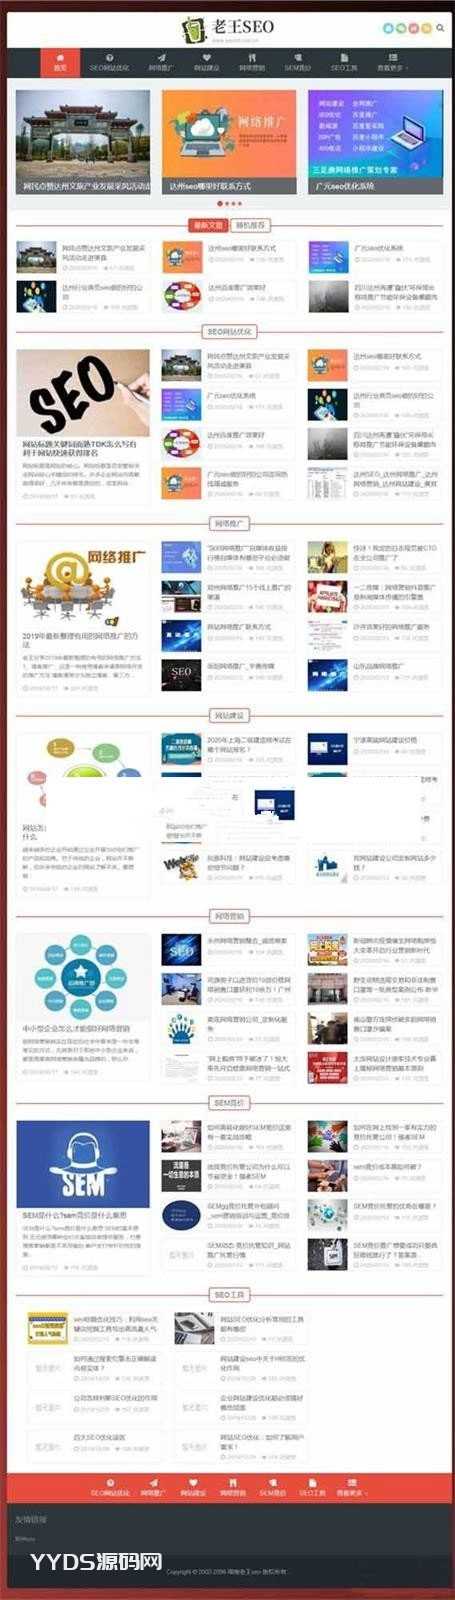 织梦老王seo优化技术教程网站整站源码 自适应带数据